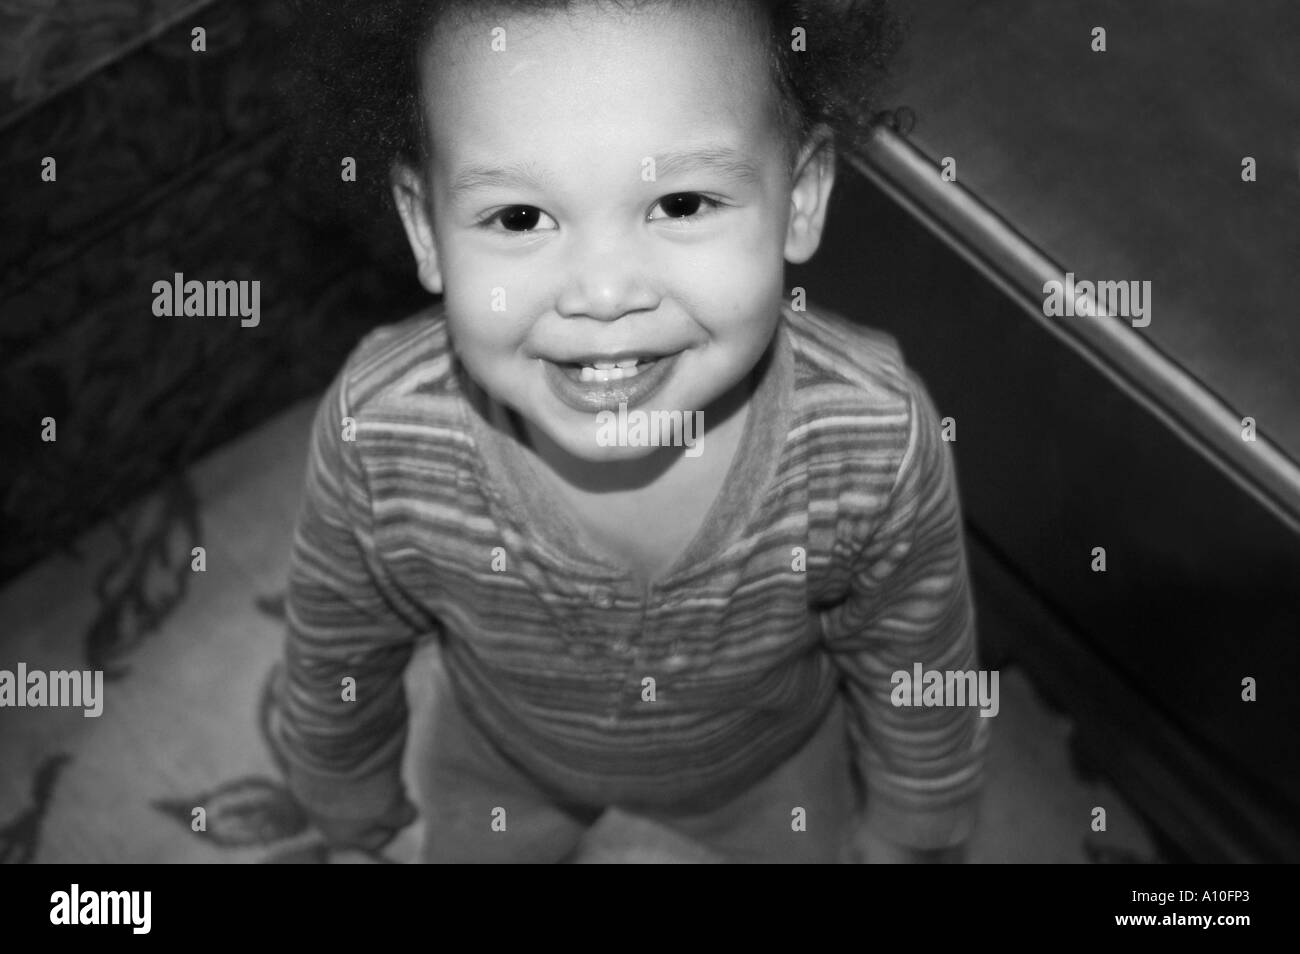 Stock Photo de l'enfant américain d'origine jamaïcaine Smiling at the Camera Banque D'Images